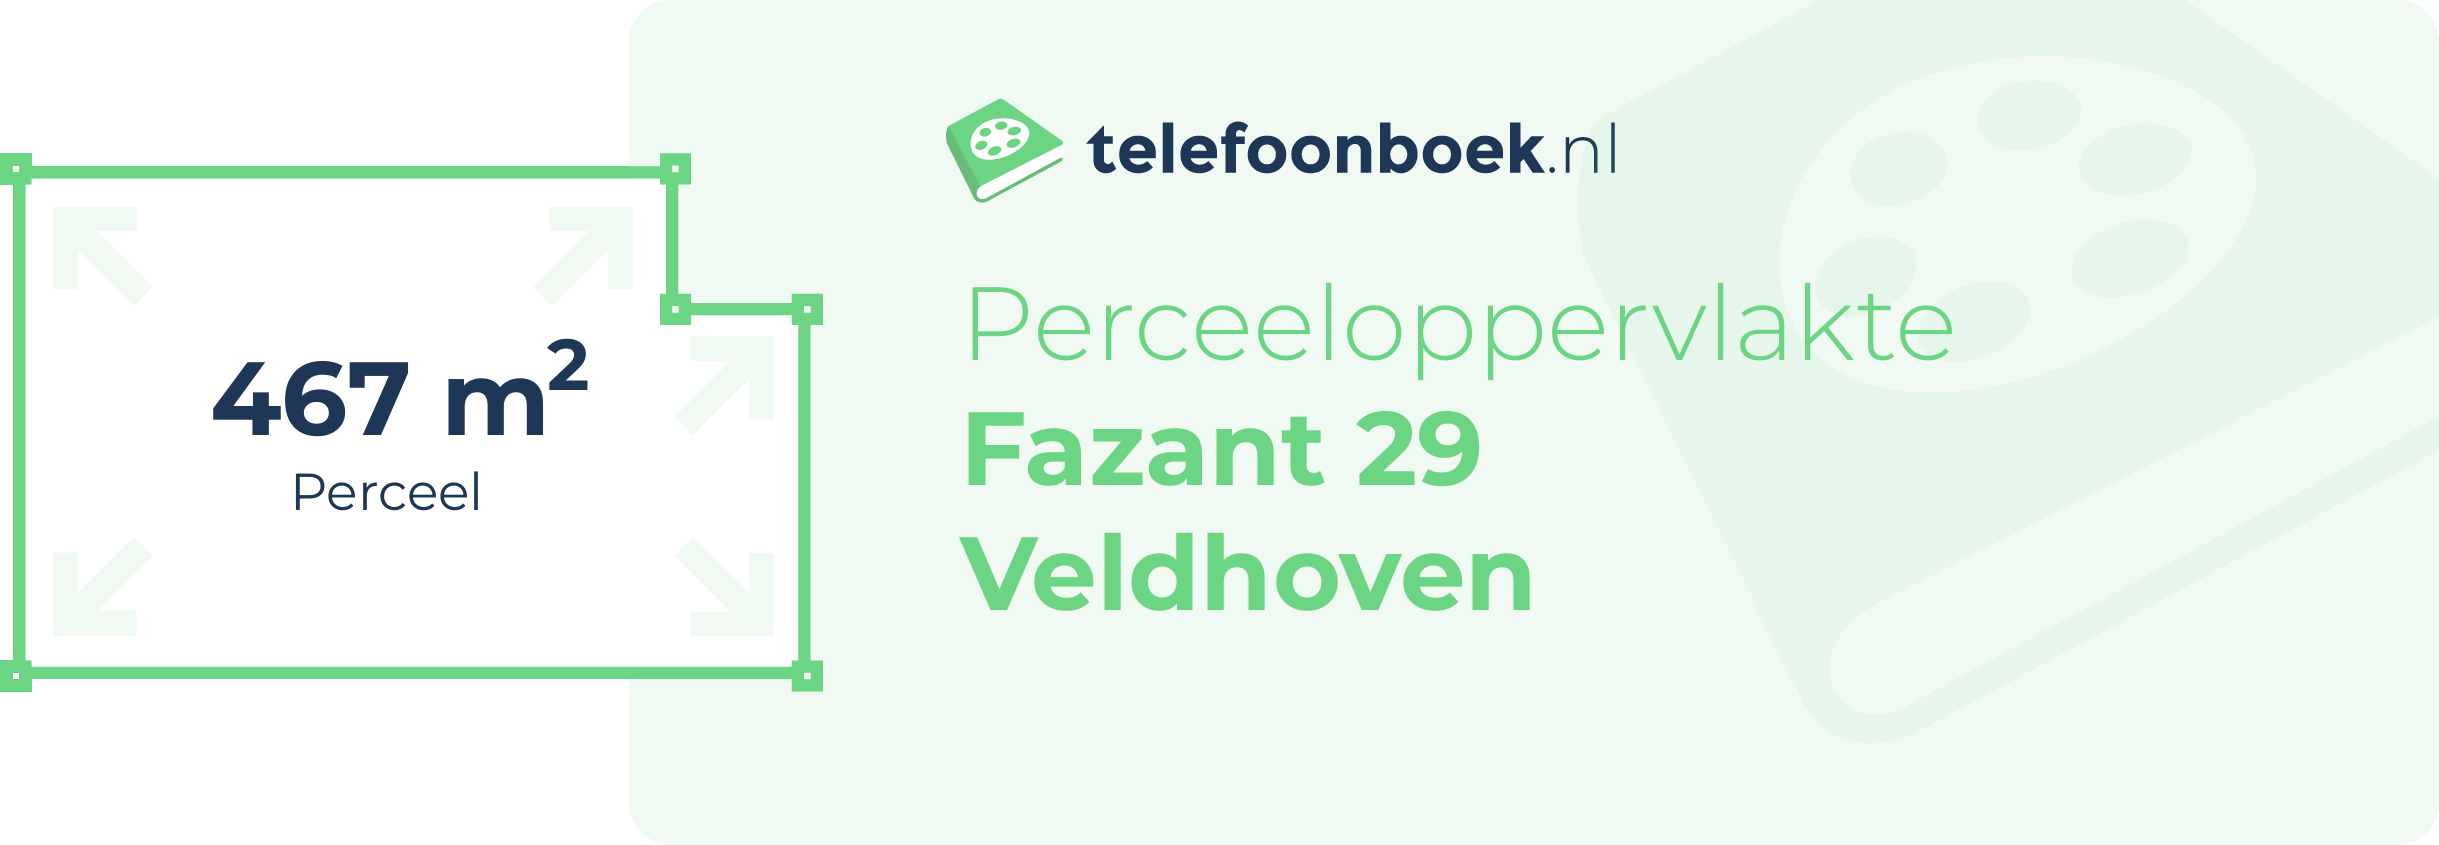 Perceeloppervlakte Fazant 29 Veldhoven